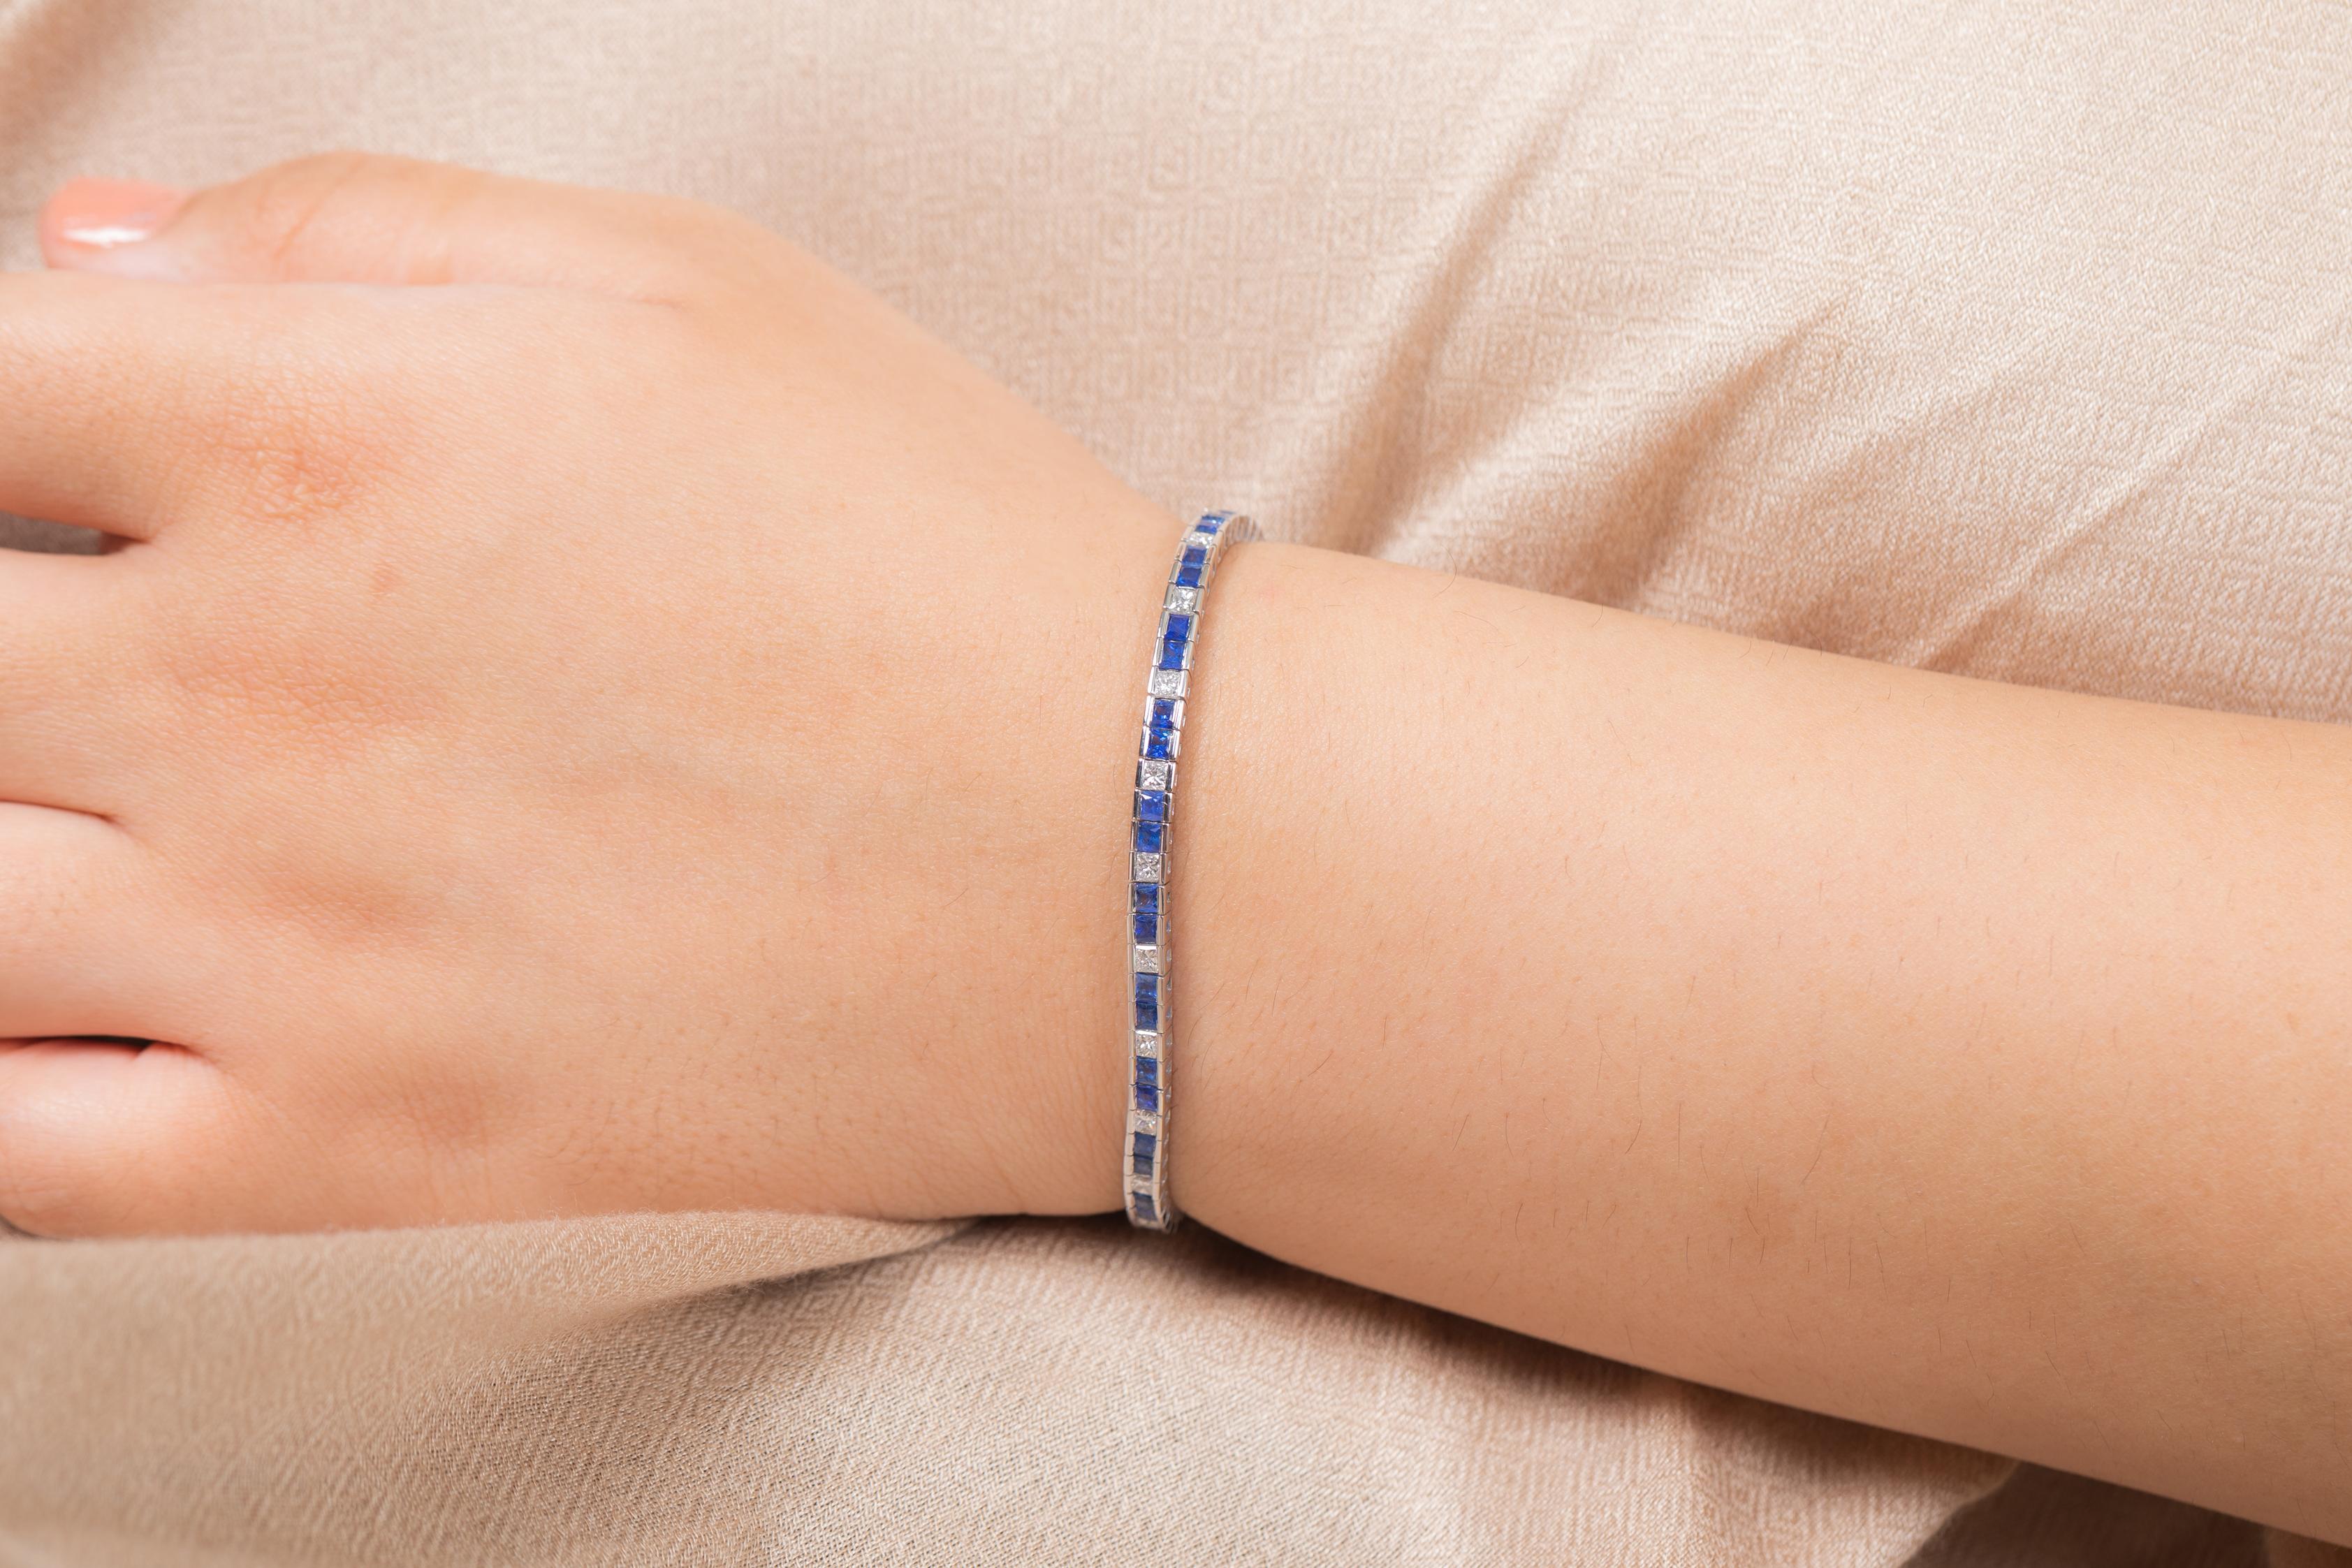 Bracelet en saphir bleu et diamant en or 18K. Il est doté d'une pierre précieuse de taille carrée parfaite qui vous permettra de vous distinguer en toute occasion ou lors d'un événement.
Un bracelet de tennis est un bijou essentiel pour le jour de